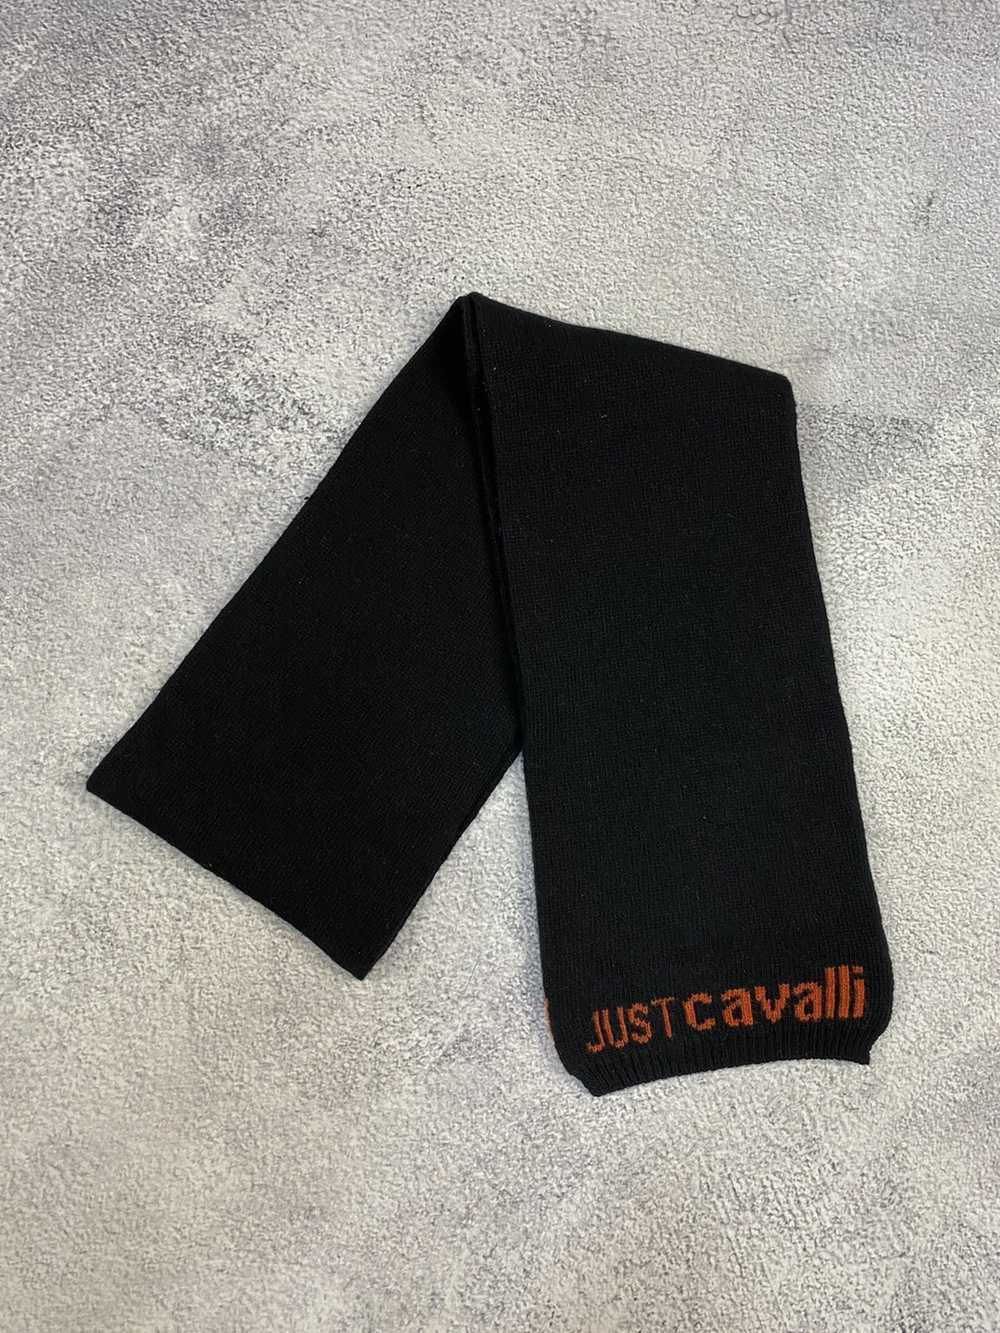 Just Cavalli Just Cavalli Wool Scarf - image 3